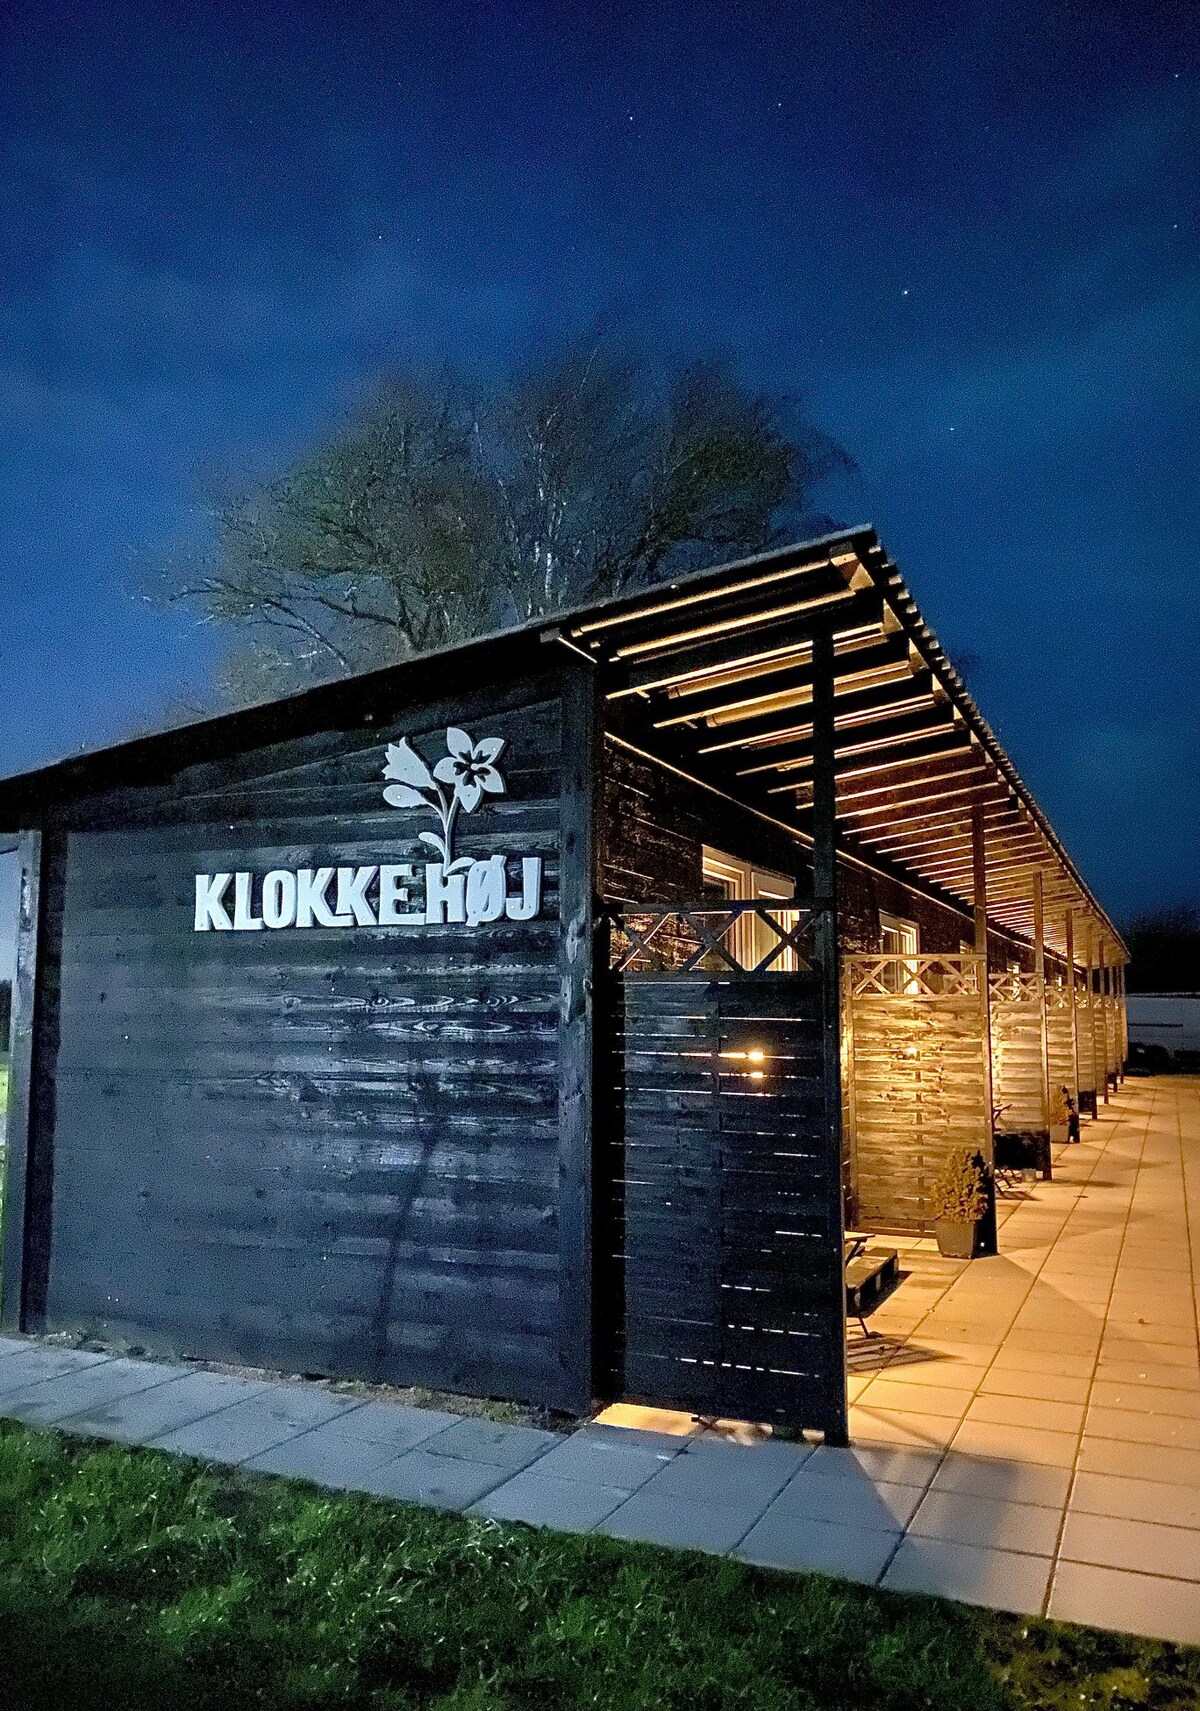 Klokkehøj - a cozy stay on a farm located on Fyn